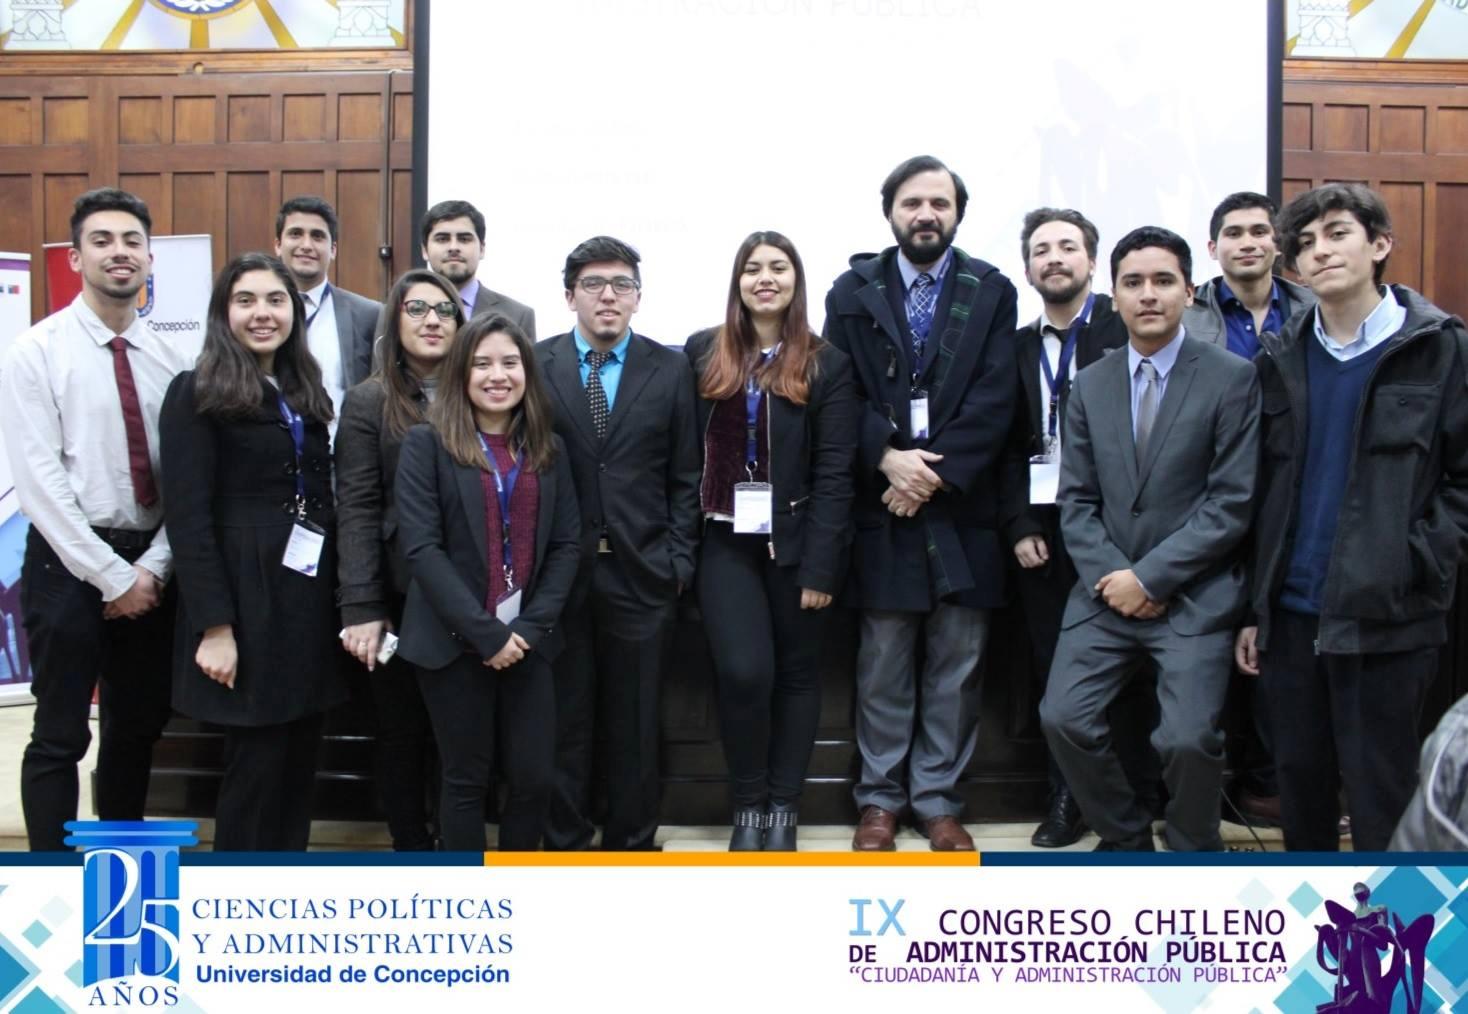 Estudiantes de diferentes cursos de Administración Pública conformaron la delegación del INAP, liderada por el profesor Cristian Pliscoff.